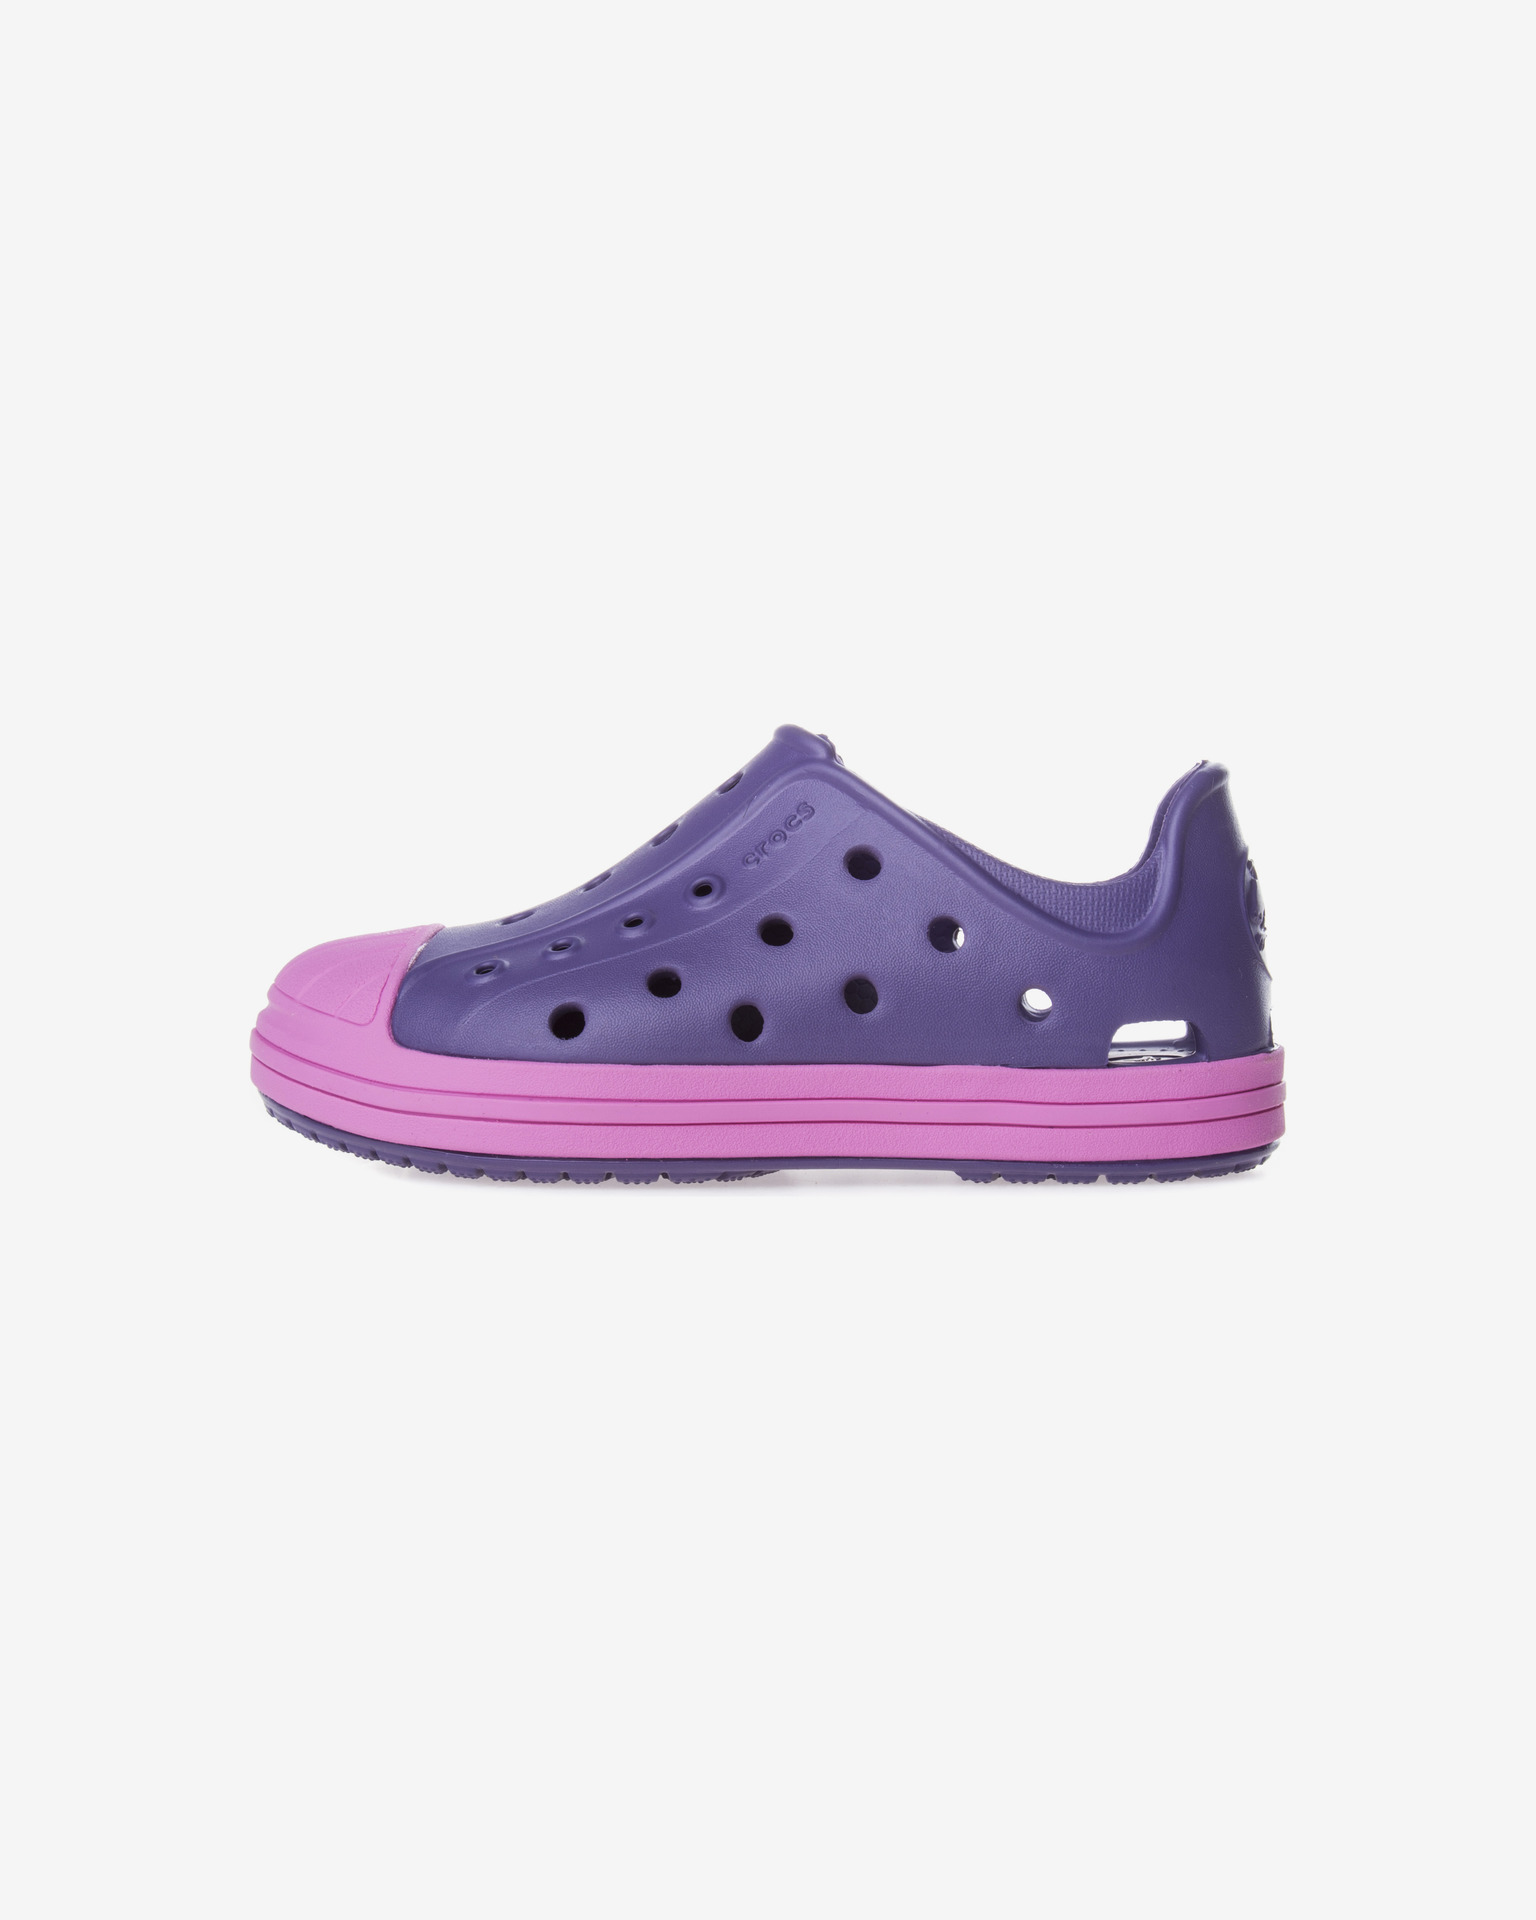 crocs bump it shoe